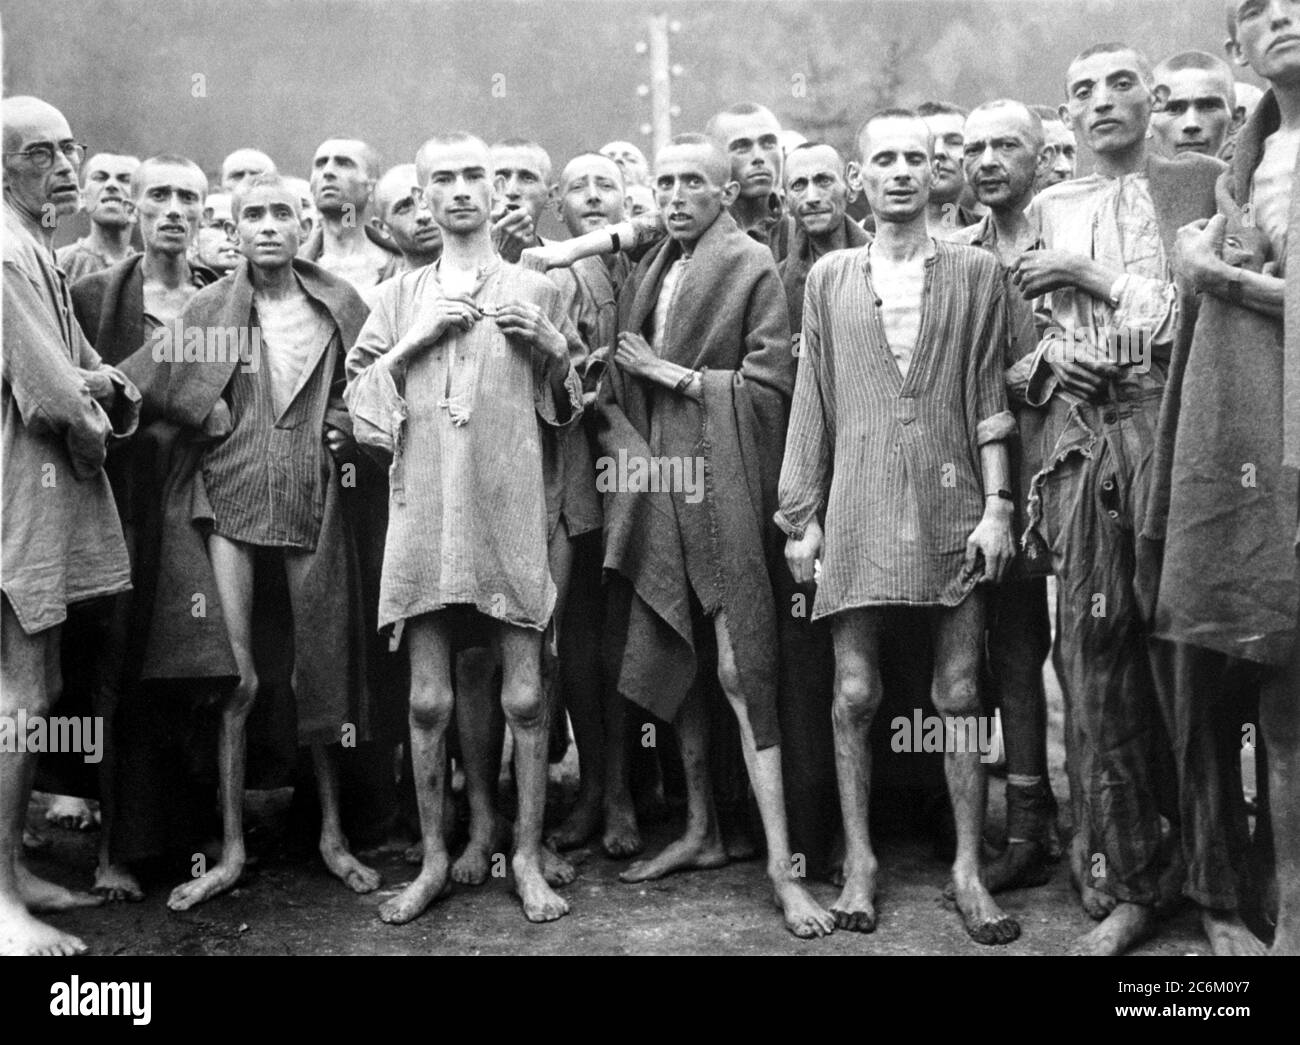 1945 , 7 de mayo, AUSTRIA : la concentración nazi alemana en EBENSEE esta  foto fue tomada por el fotógrafo oficial del Ejército de los Estados Unidos  del Teniente A. E. Samuelson.